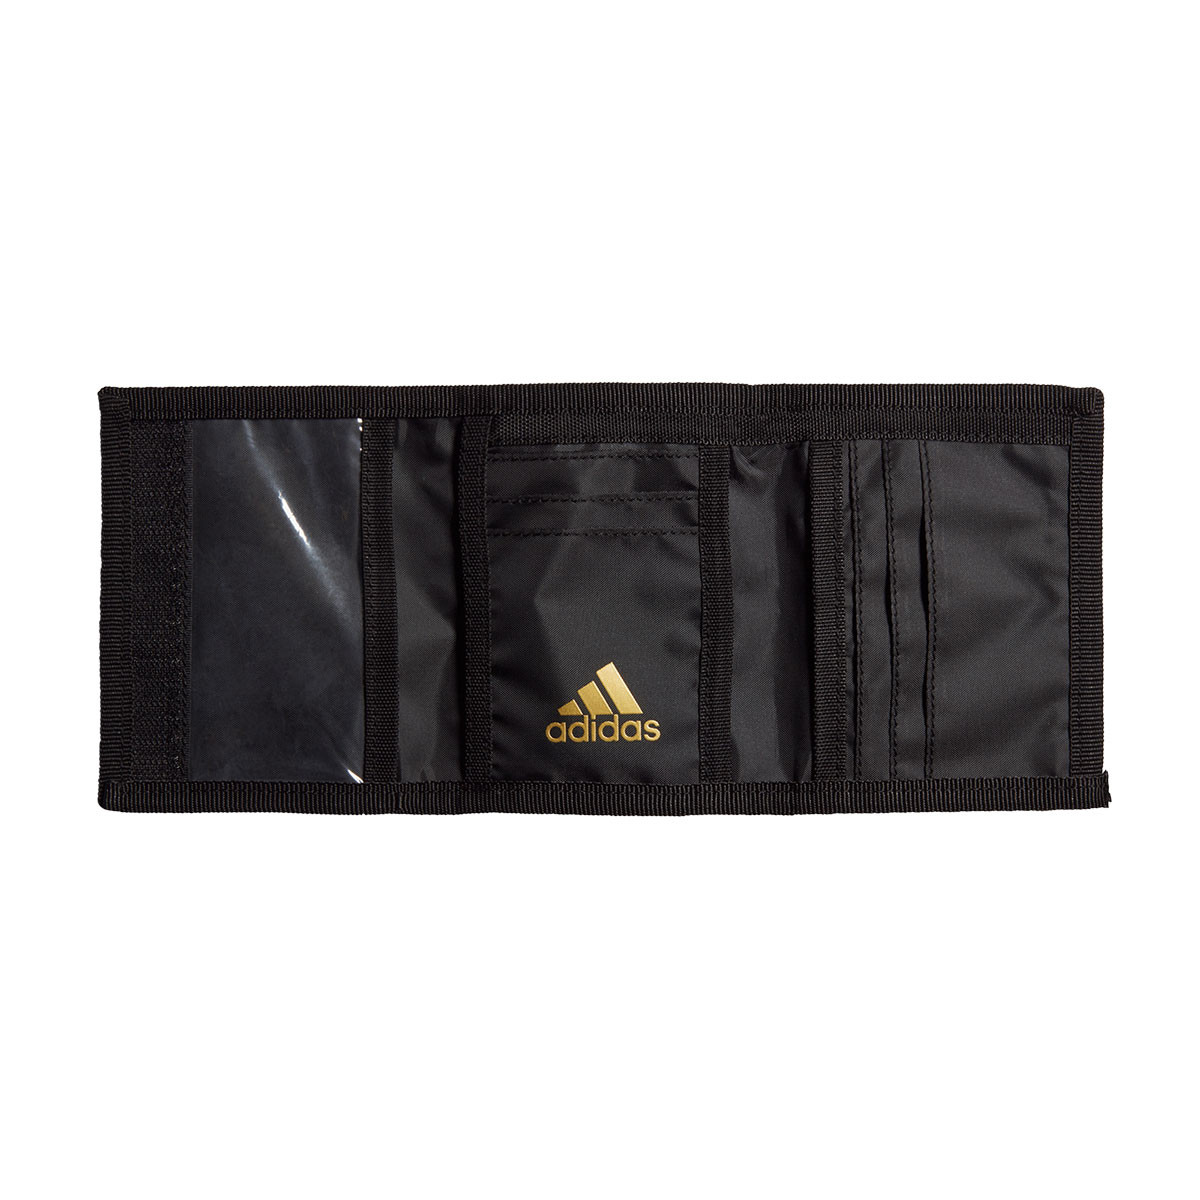 Wallet adidas Real Madrid Wallet 2019-2020 Black-Carbon-Dark football gold  - Football store Fútbol Emotion